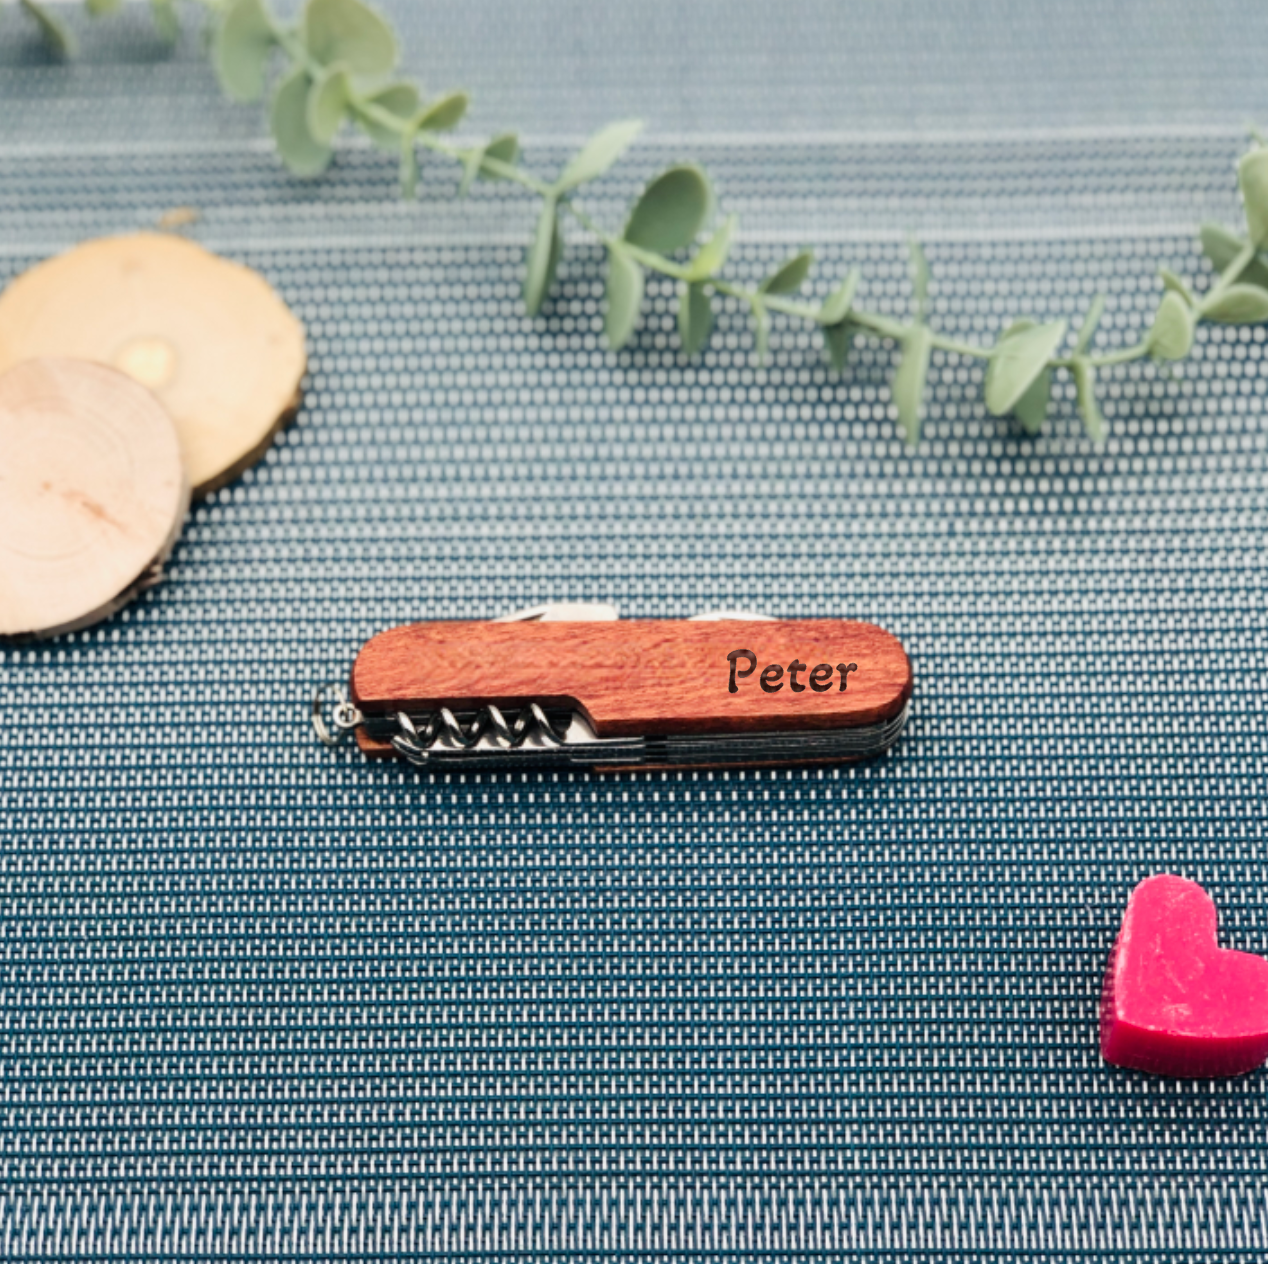 Geschenk zum Vatertag - Taschenmesser mit Holzgriff - Geschenk mit Gravur für Papa / Opa zum Vatertag - Vatertagsgeschenk personalisiert